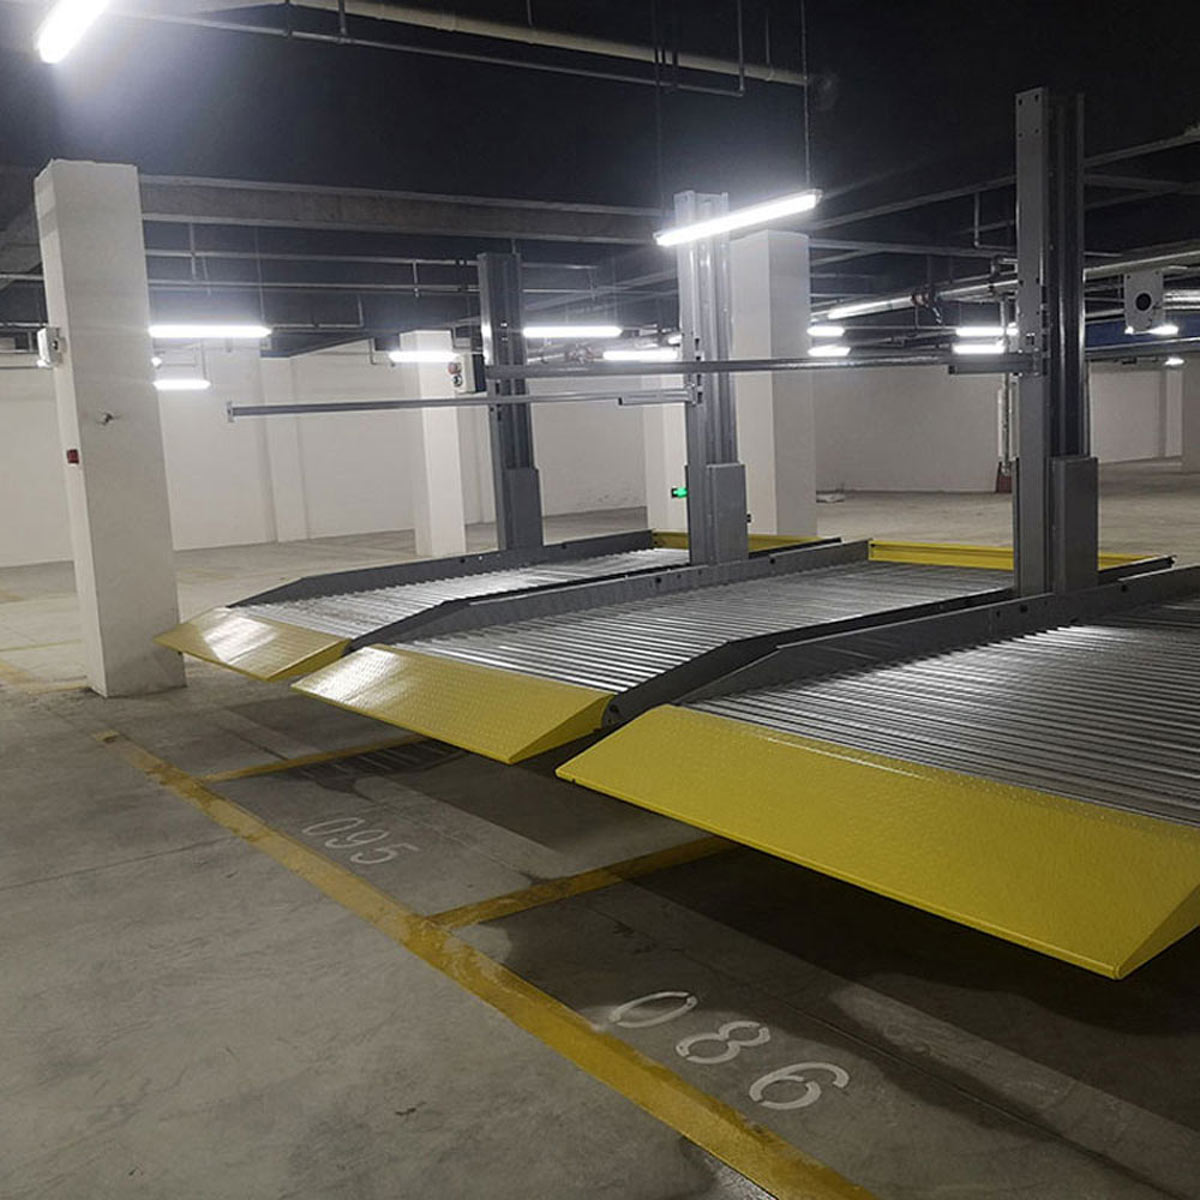 合作立體停車庫改善區域停車四種解決模式